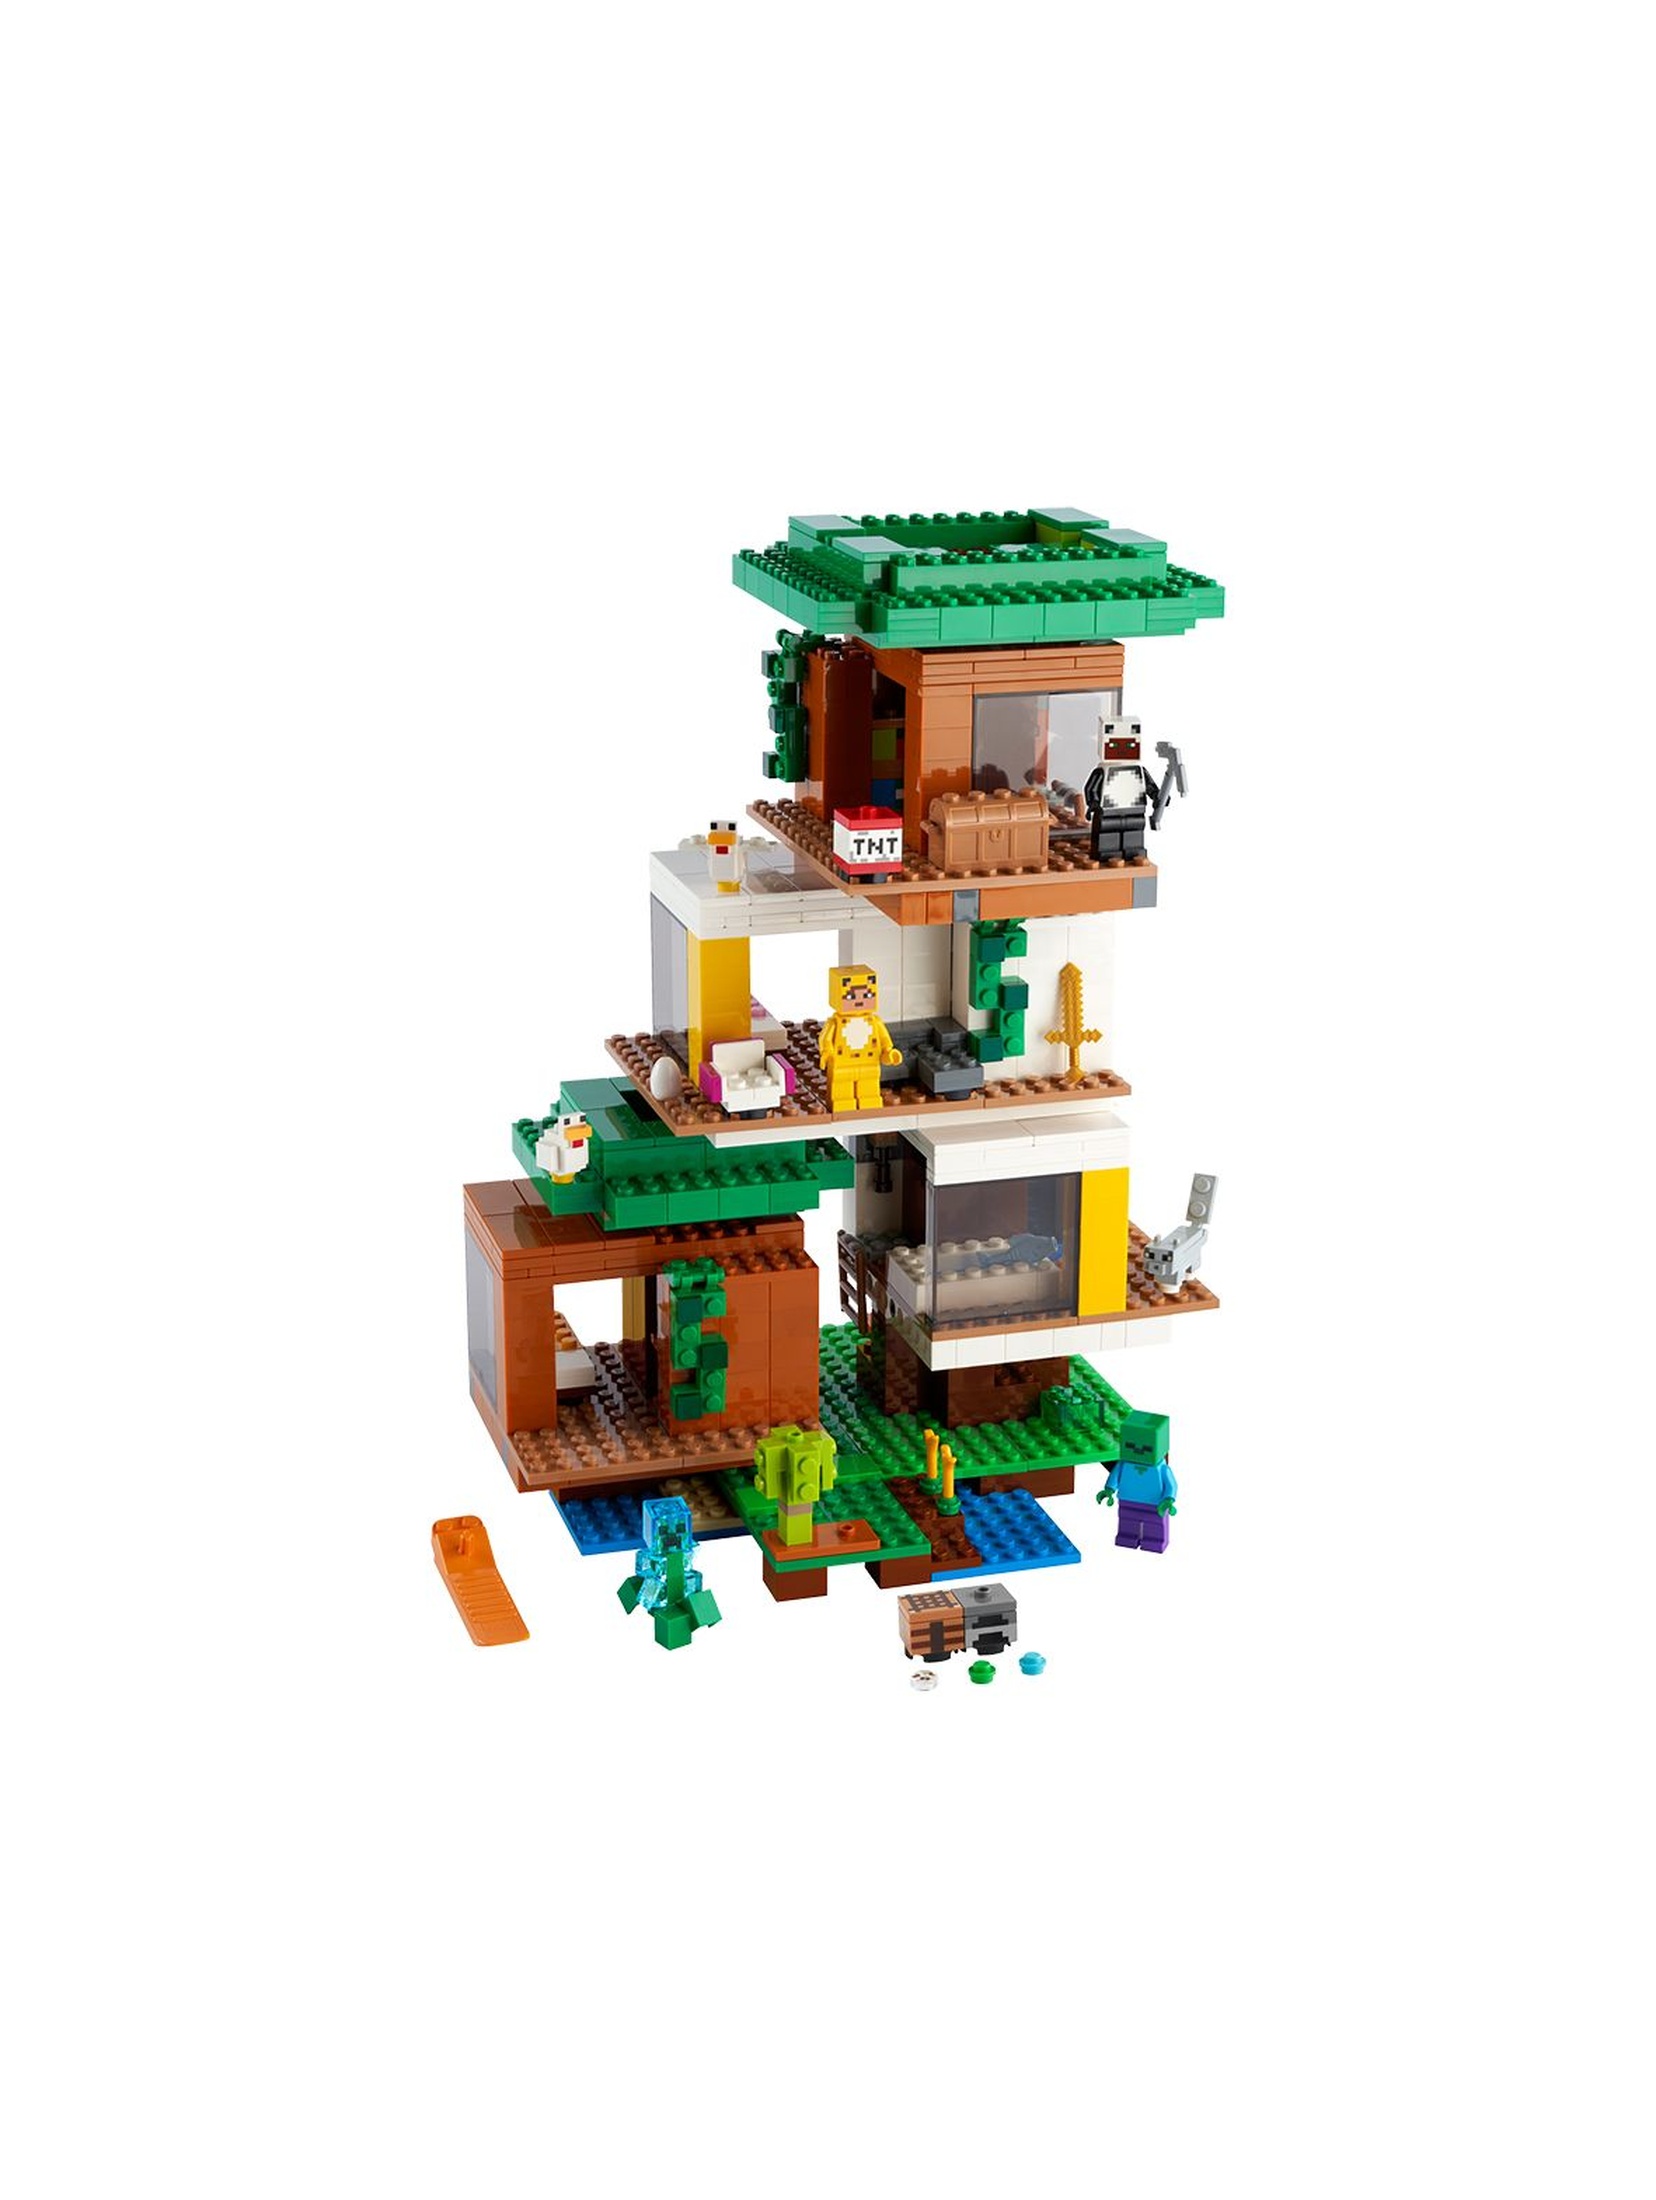 LEGO Minecraft - Nowoczesny domek na drzewie 21174 - wiek 9+